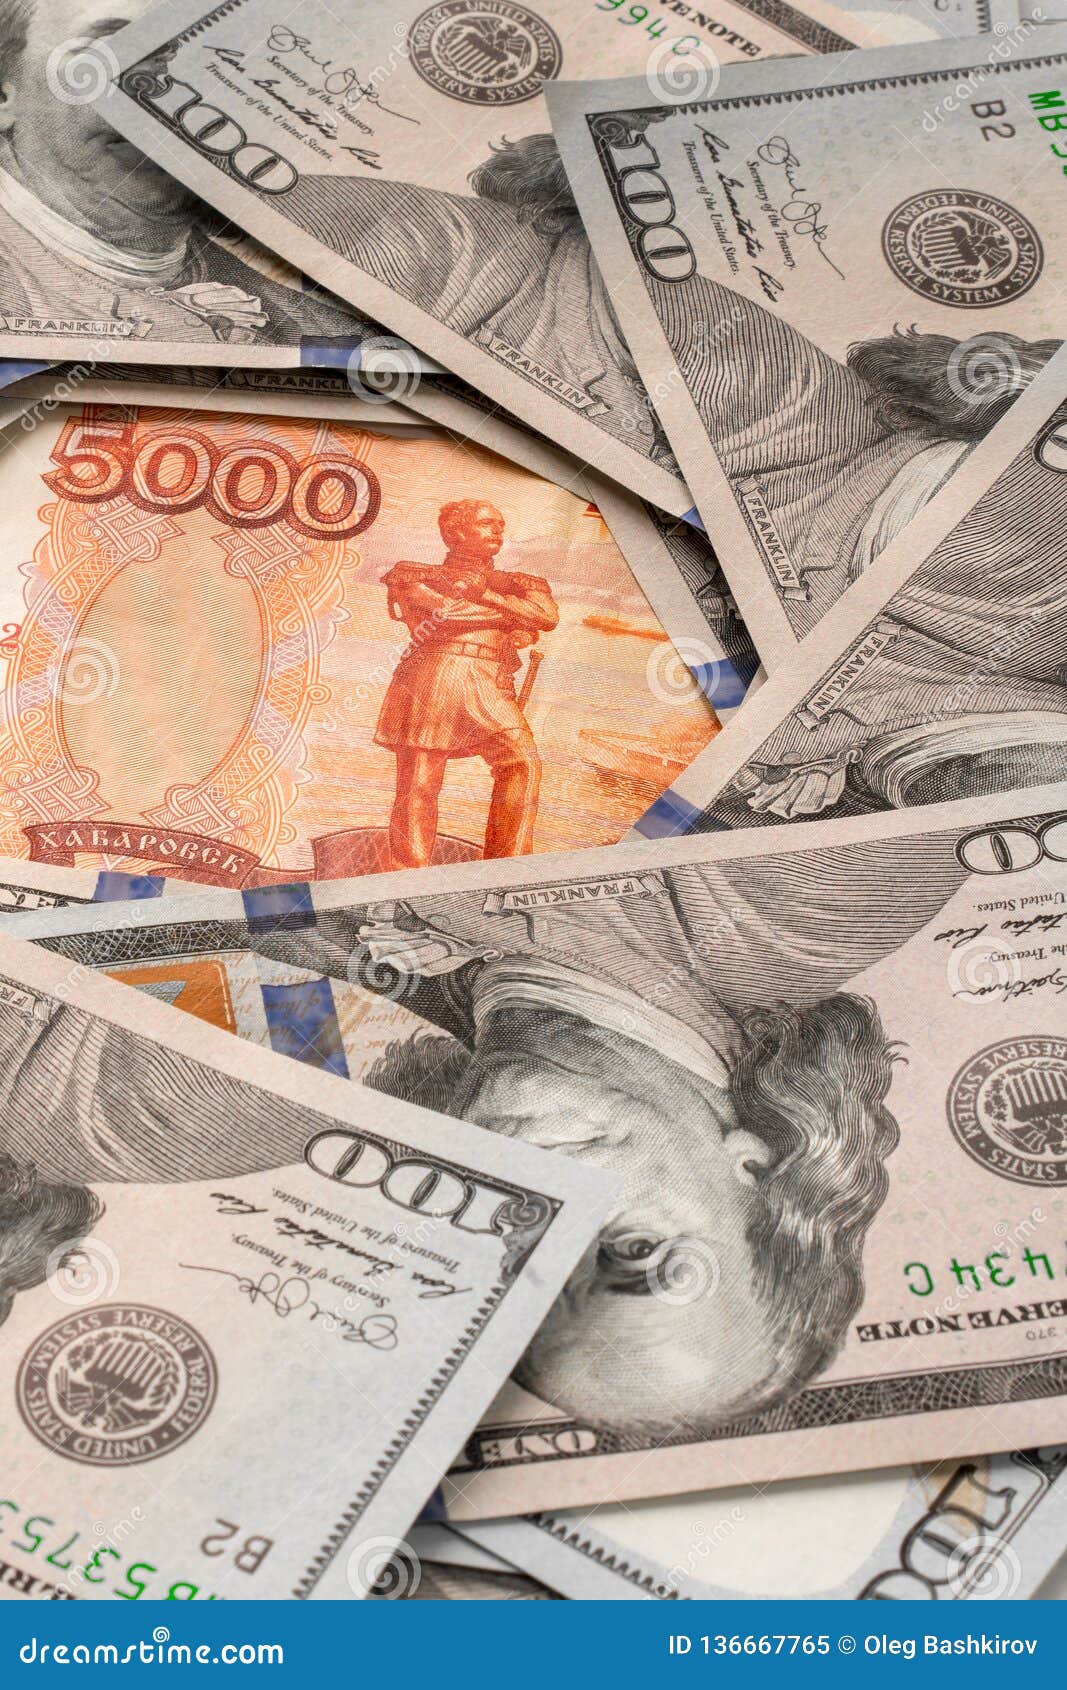 Обмен валюта доллар и рубль crypto moreno